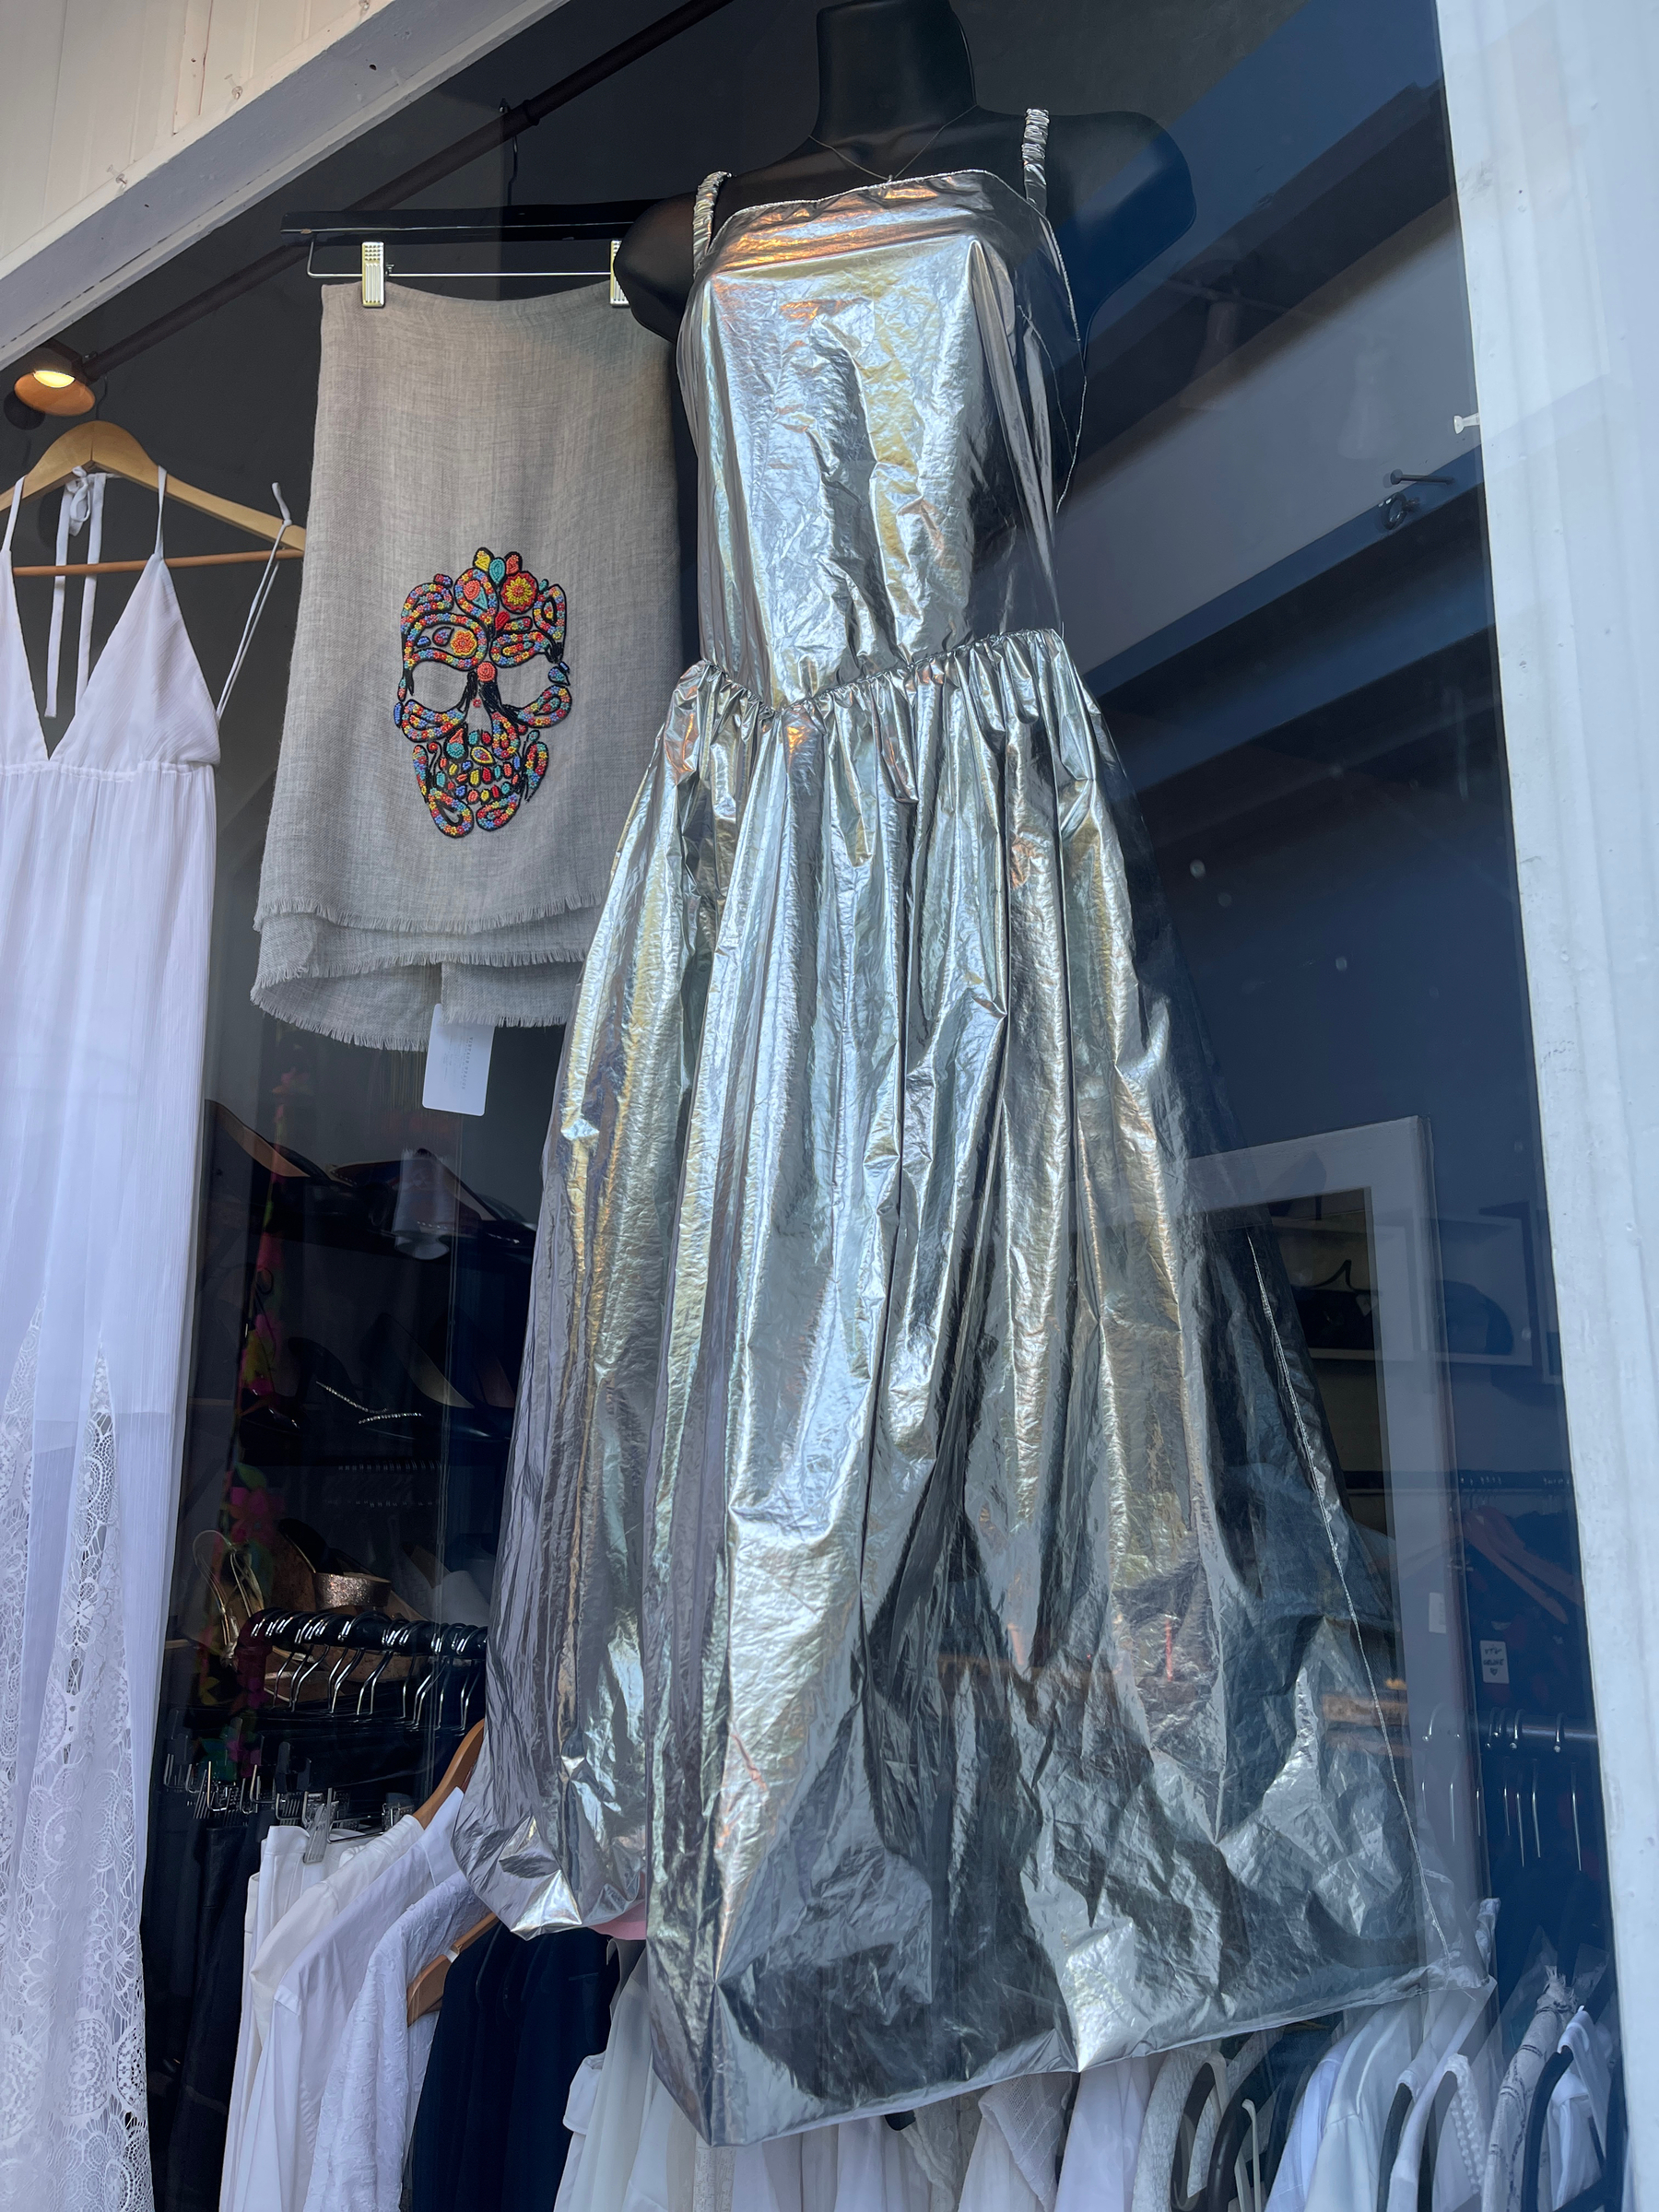 Silver formal dress in a shop window.